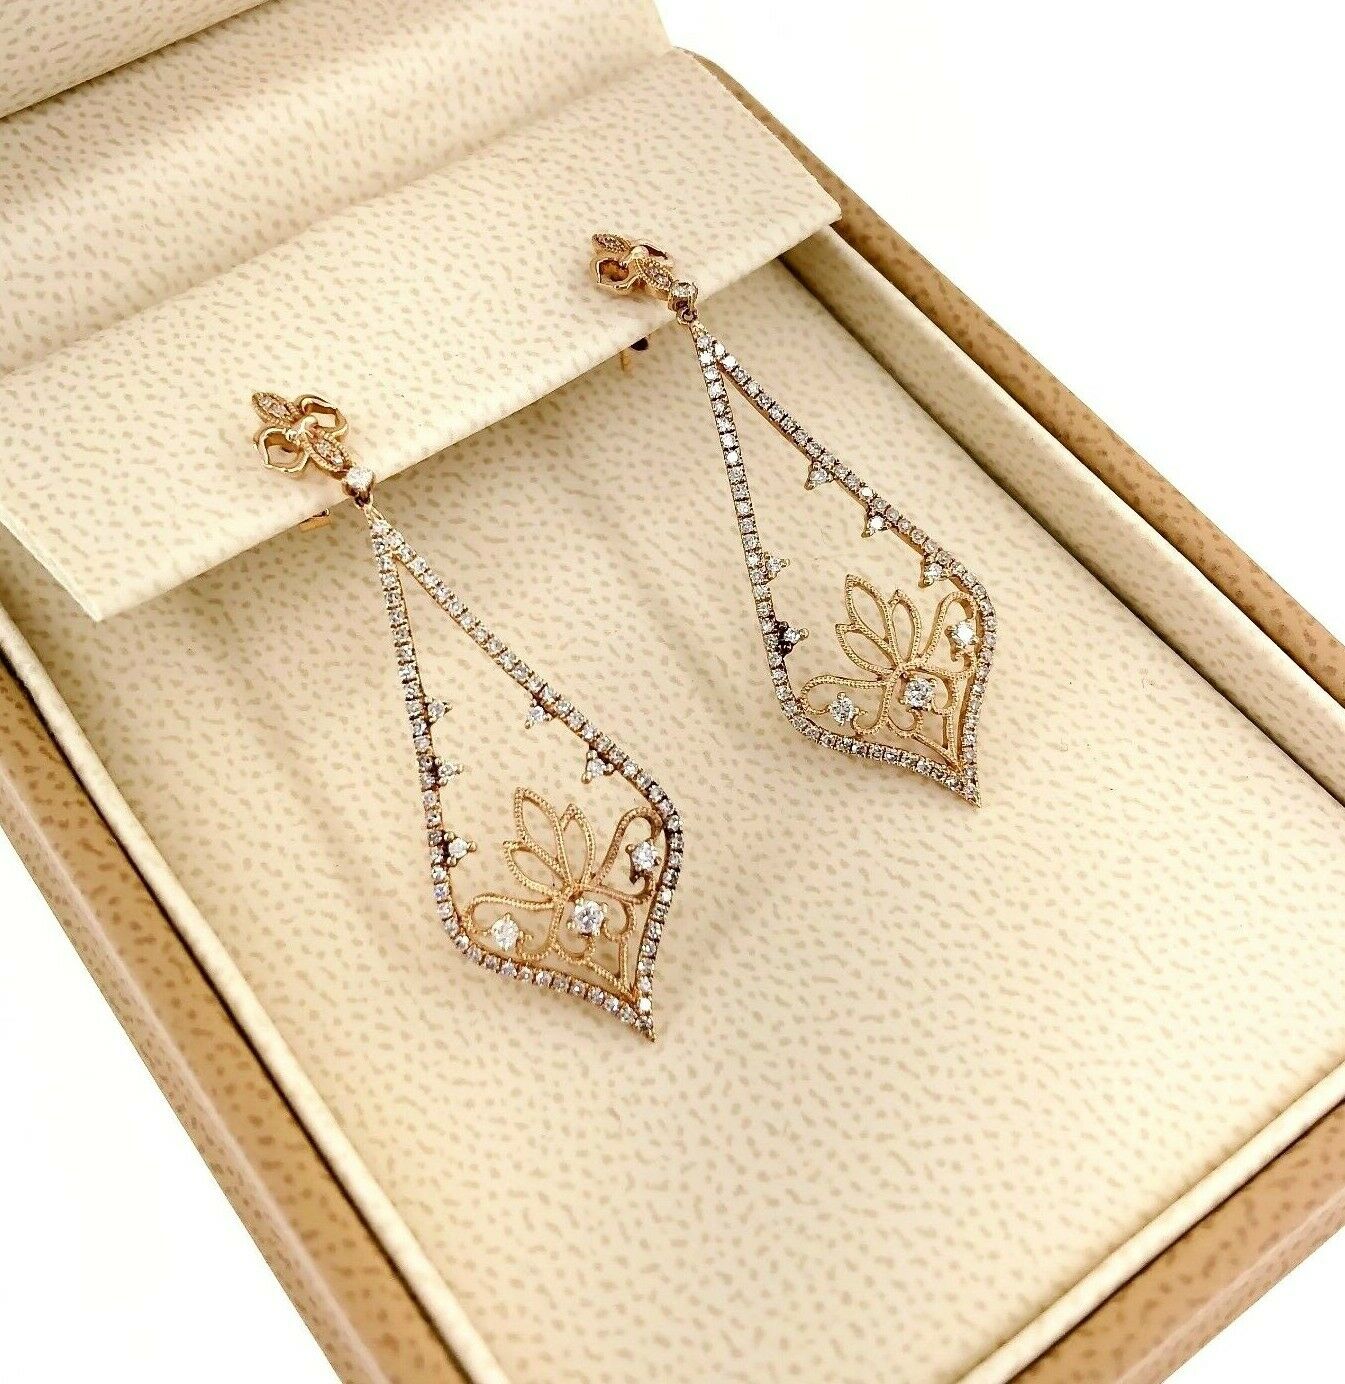 0.55 Carat t.w. Diamond Motif Dangle Earrings 18 Karat Rose Gold 1.75 Inch Drop